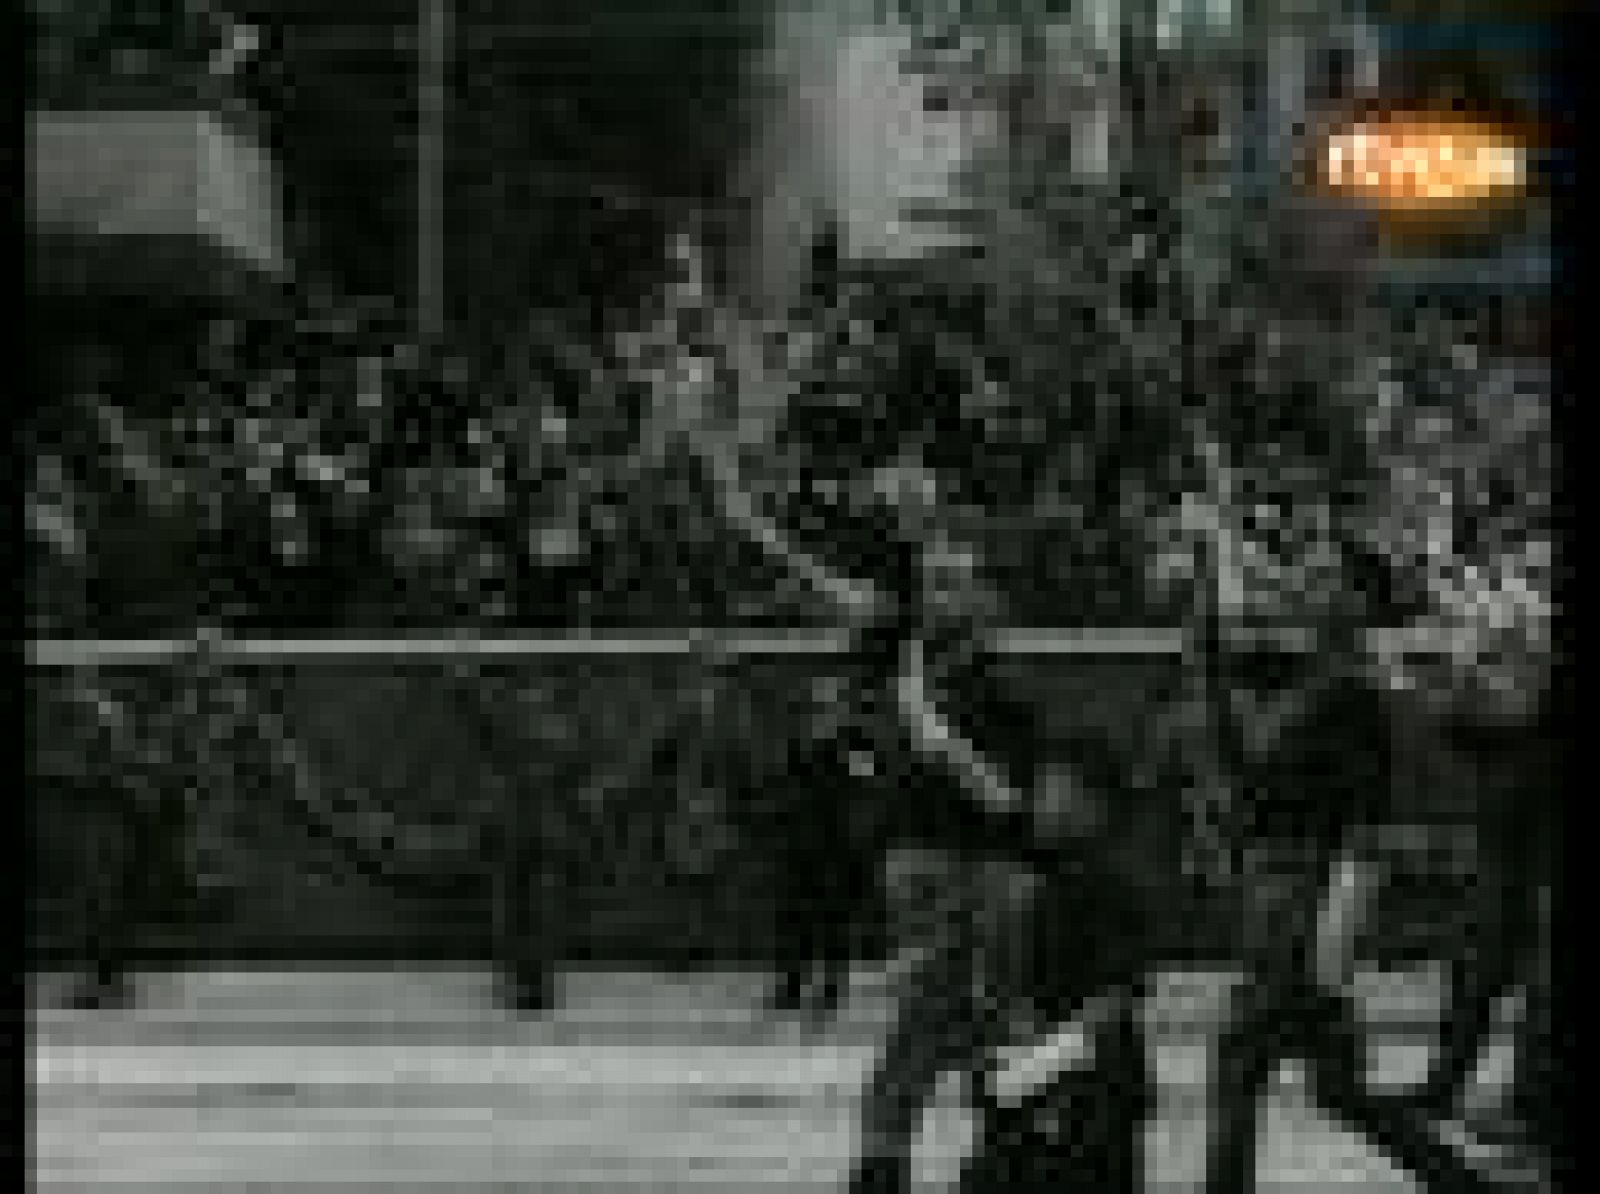 El desfile de la victoria del 1 de abril de 1939